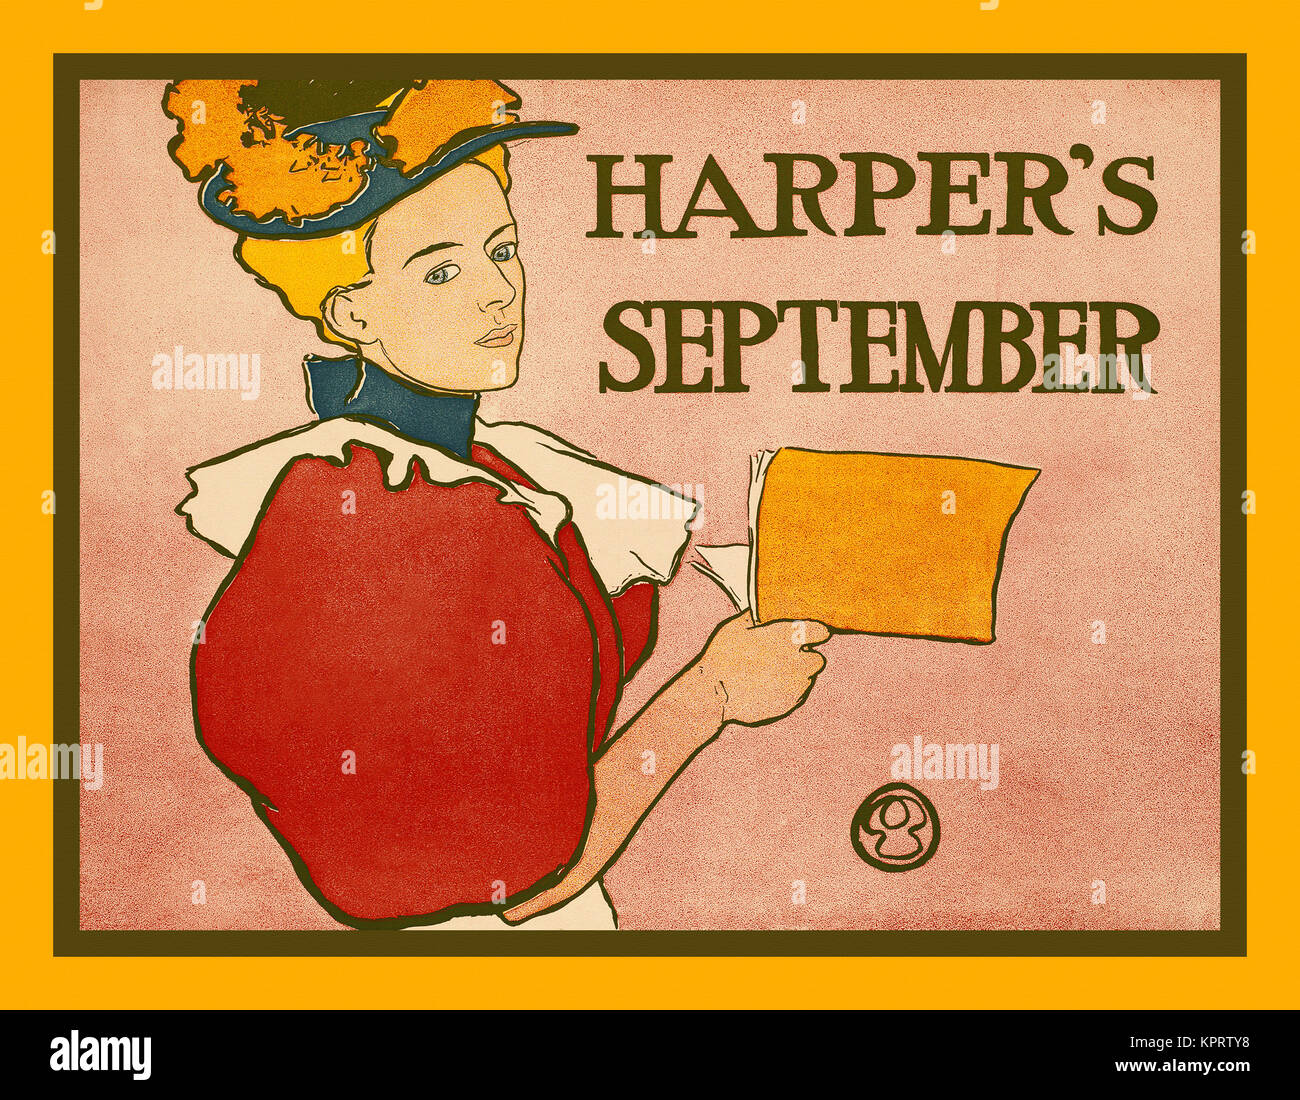 Harper's September Stock Photo